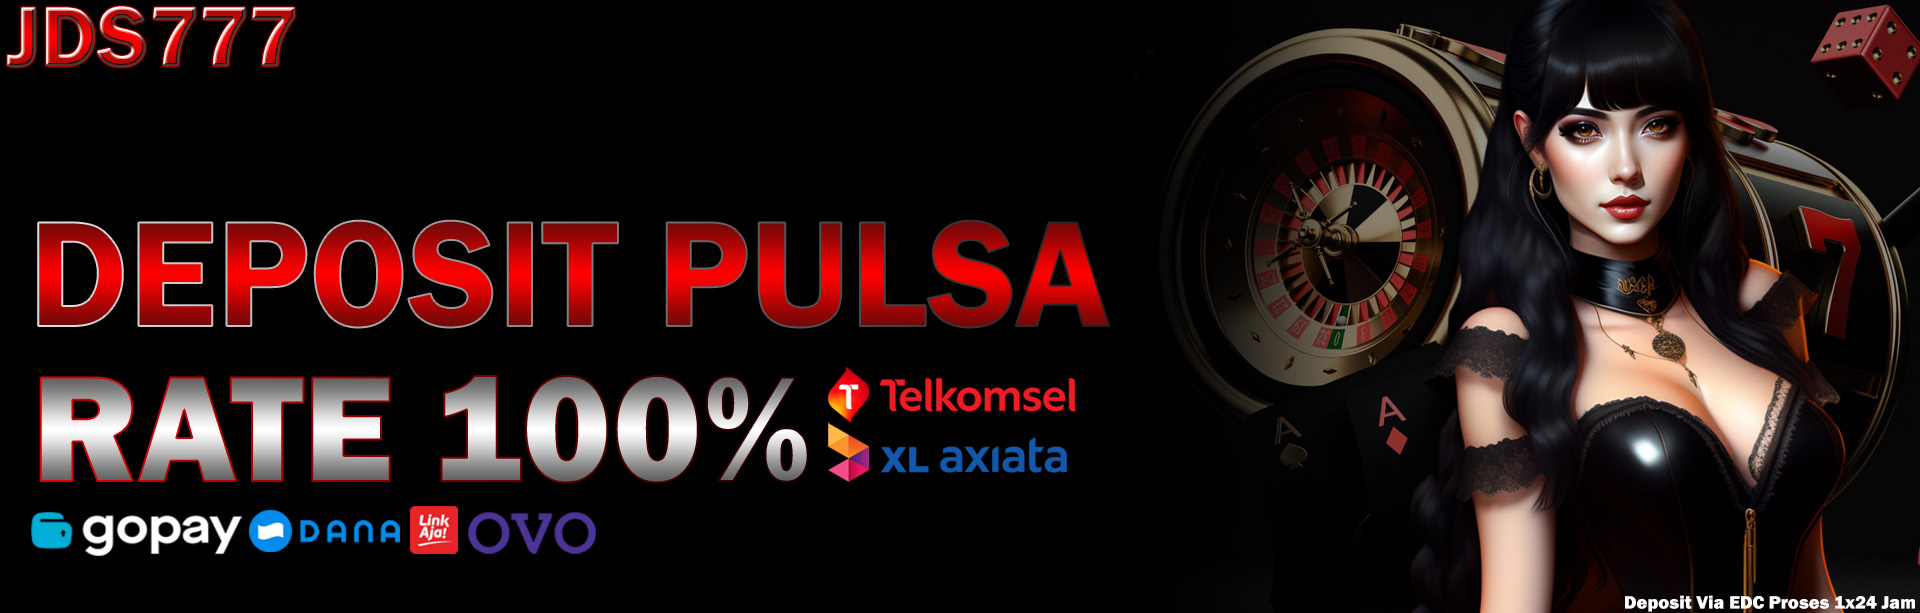 Bandar Slot Pulsa 777 Deposit Tanpa Potongan Via Telkomsel Rate 100%